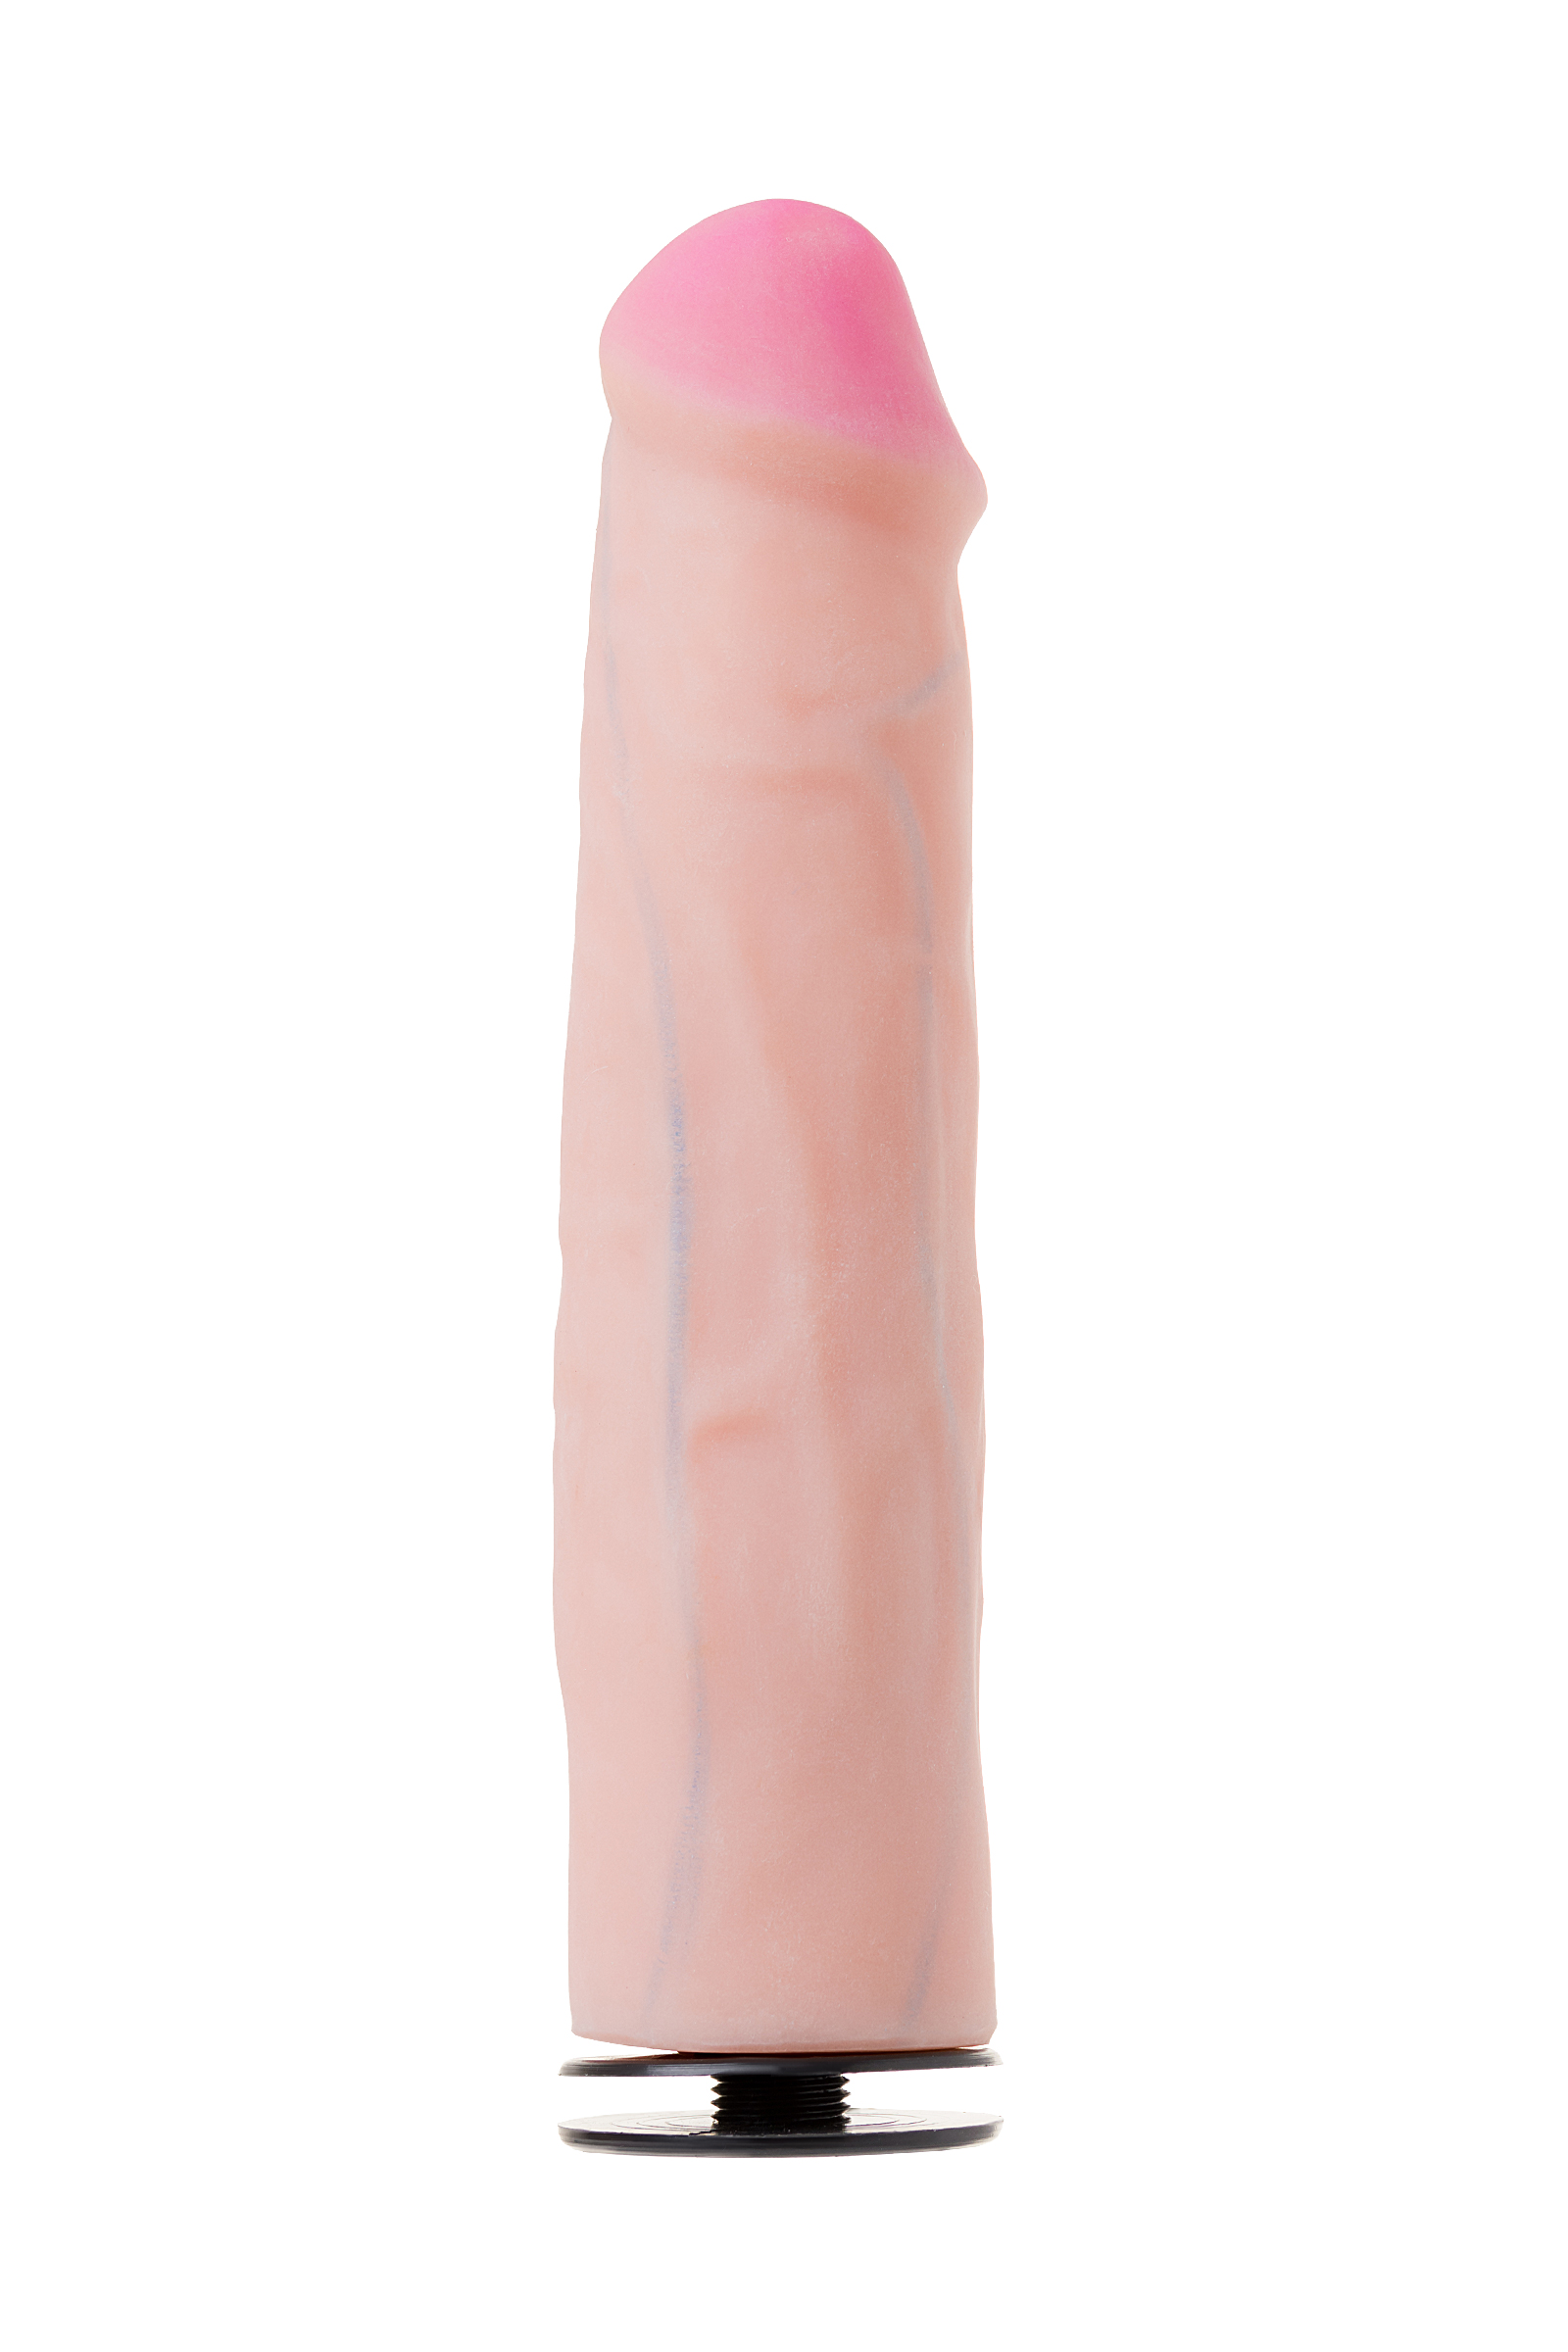 Страпон на креплении LoveToy с поясом Harness, реалистичный, neoskin, телесный, 21 см. Фото N8